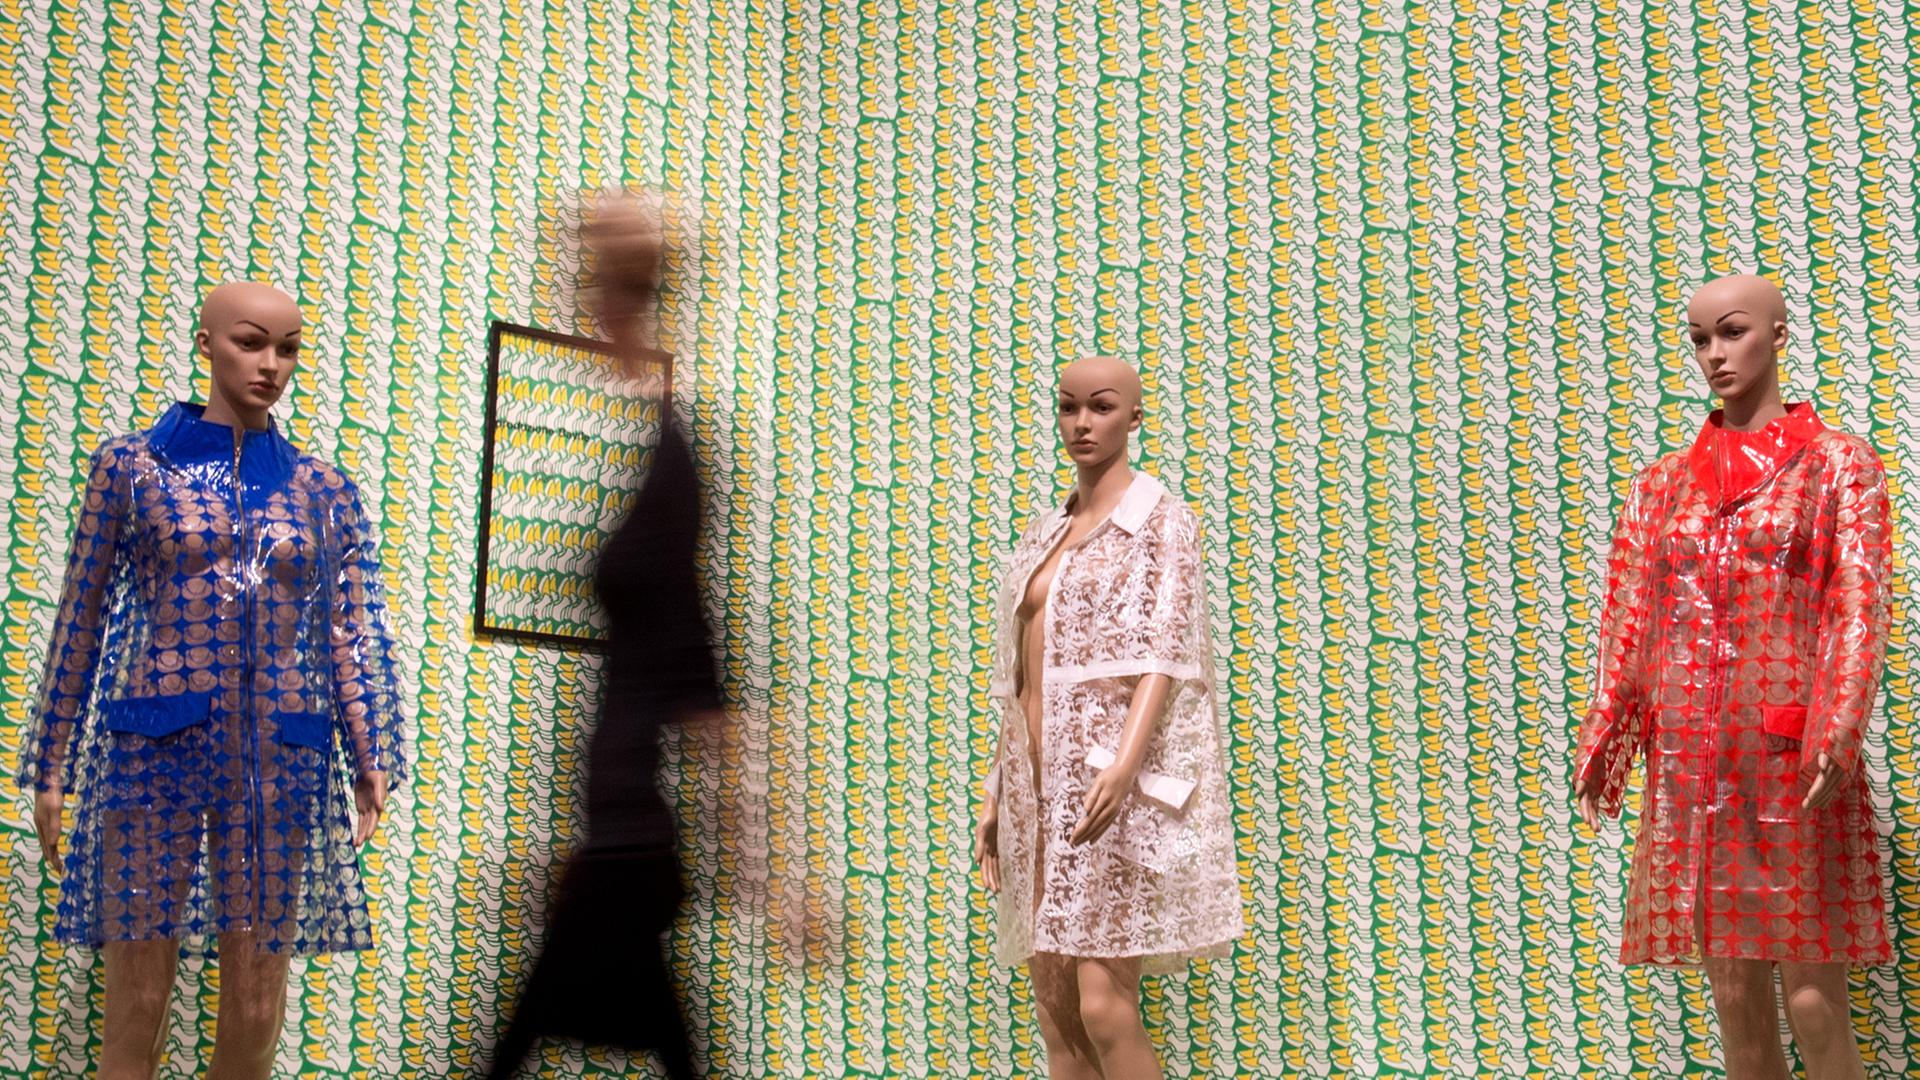 "Cape" nennt der Künstler Thomas Bayrle seine mit transparenten Regenmänteln bekleidete Puppen, die am 05.11.2014 in der Ausstellung "German Pop" in der Kunsthalle Schirn in Frankfurt am Main zu sehen sind.